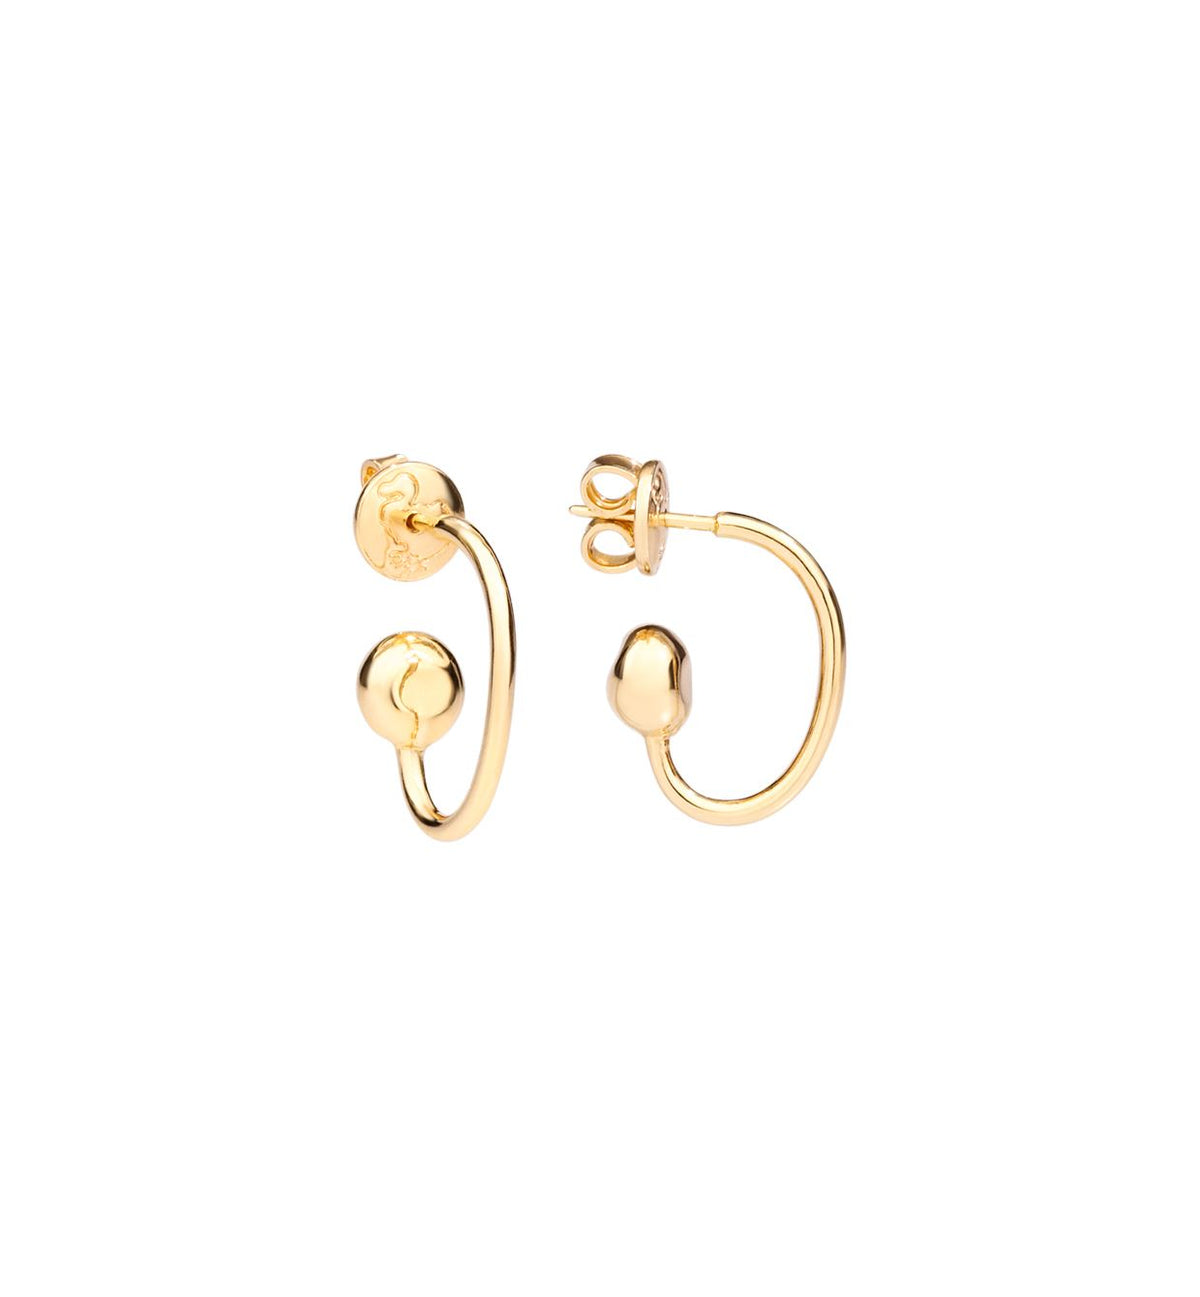 DoDo Pepita Earrings in 18k Yellow Gold - Orsini Jewellers NZ